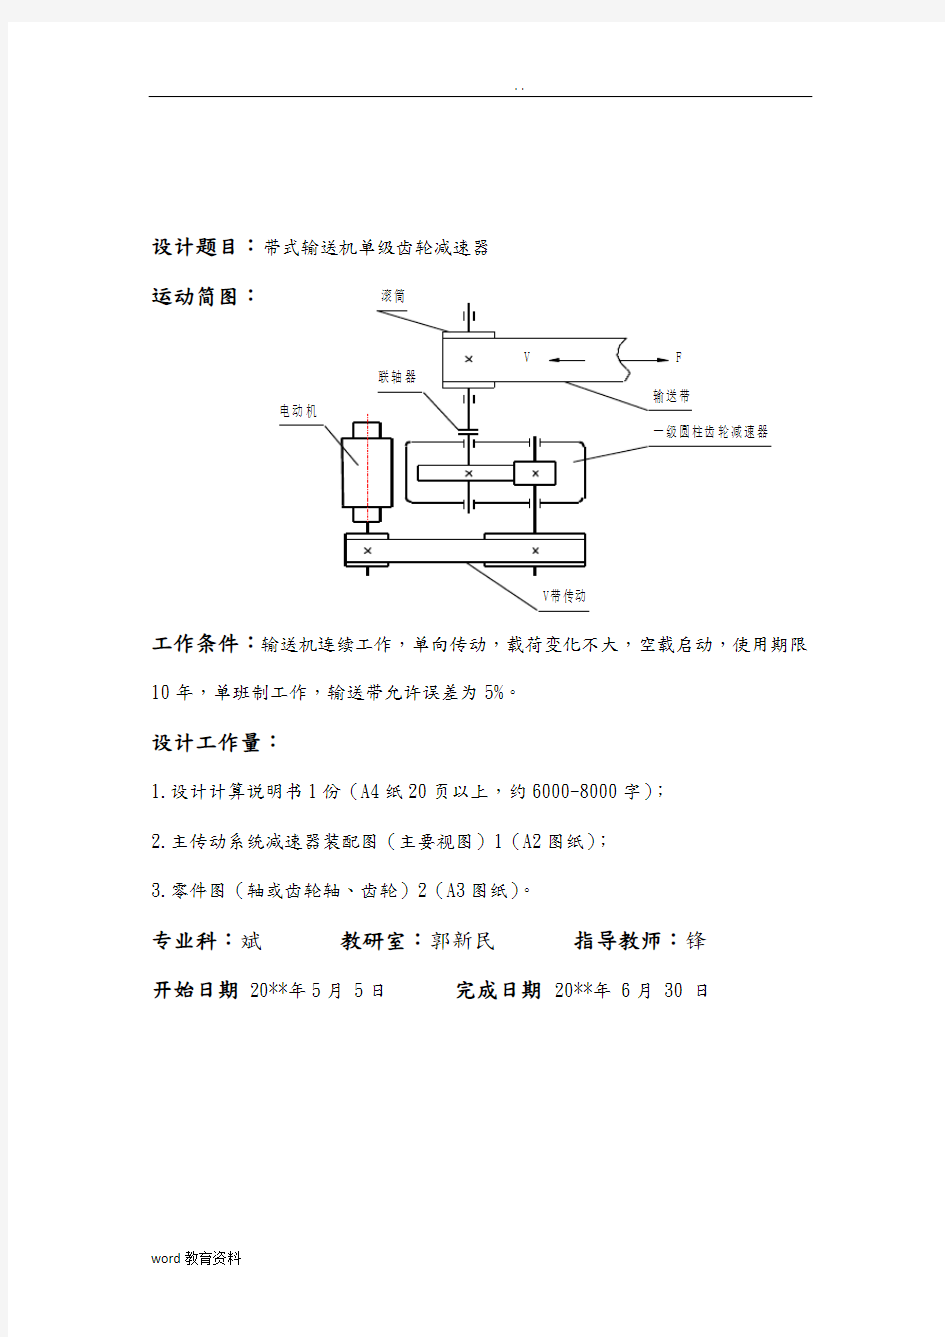 机械设计基础课程设计报告模板(减速器设计)